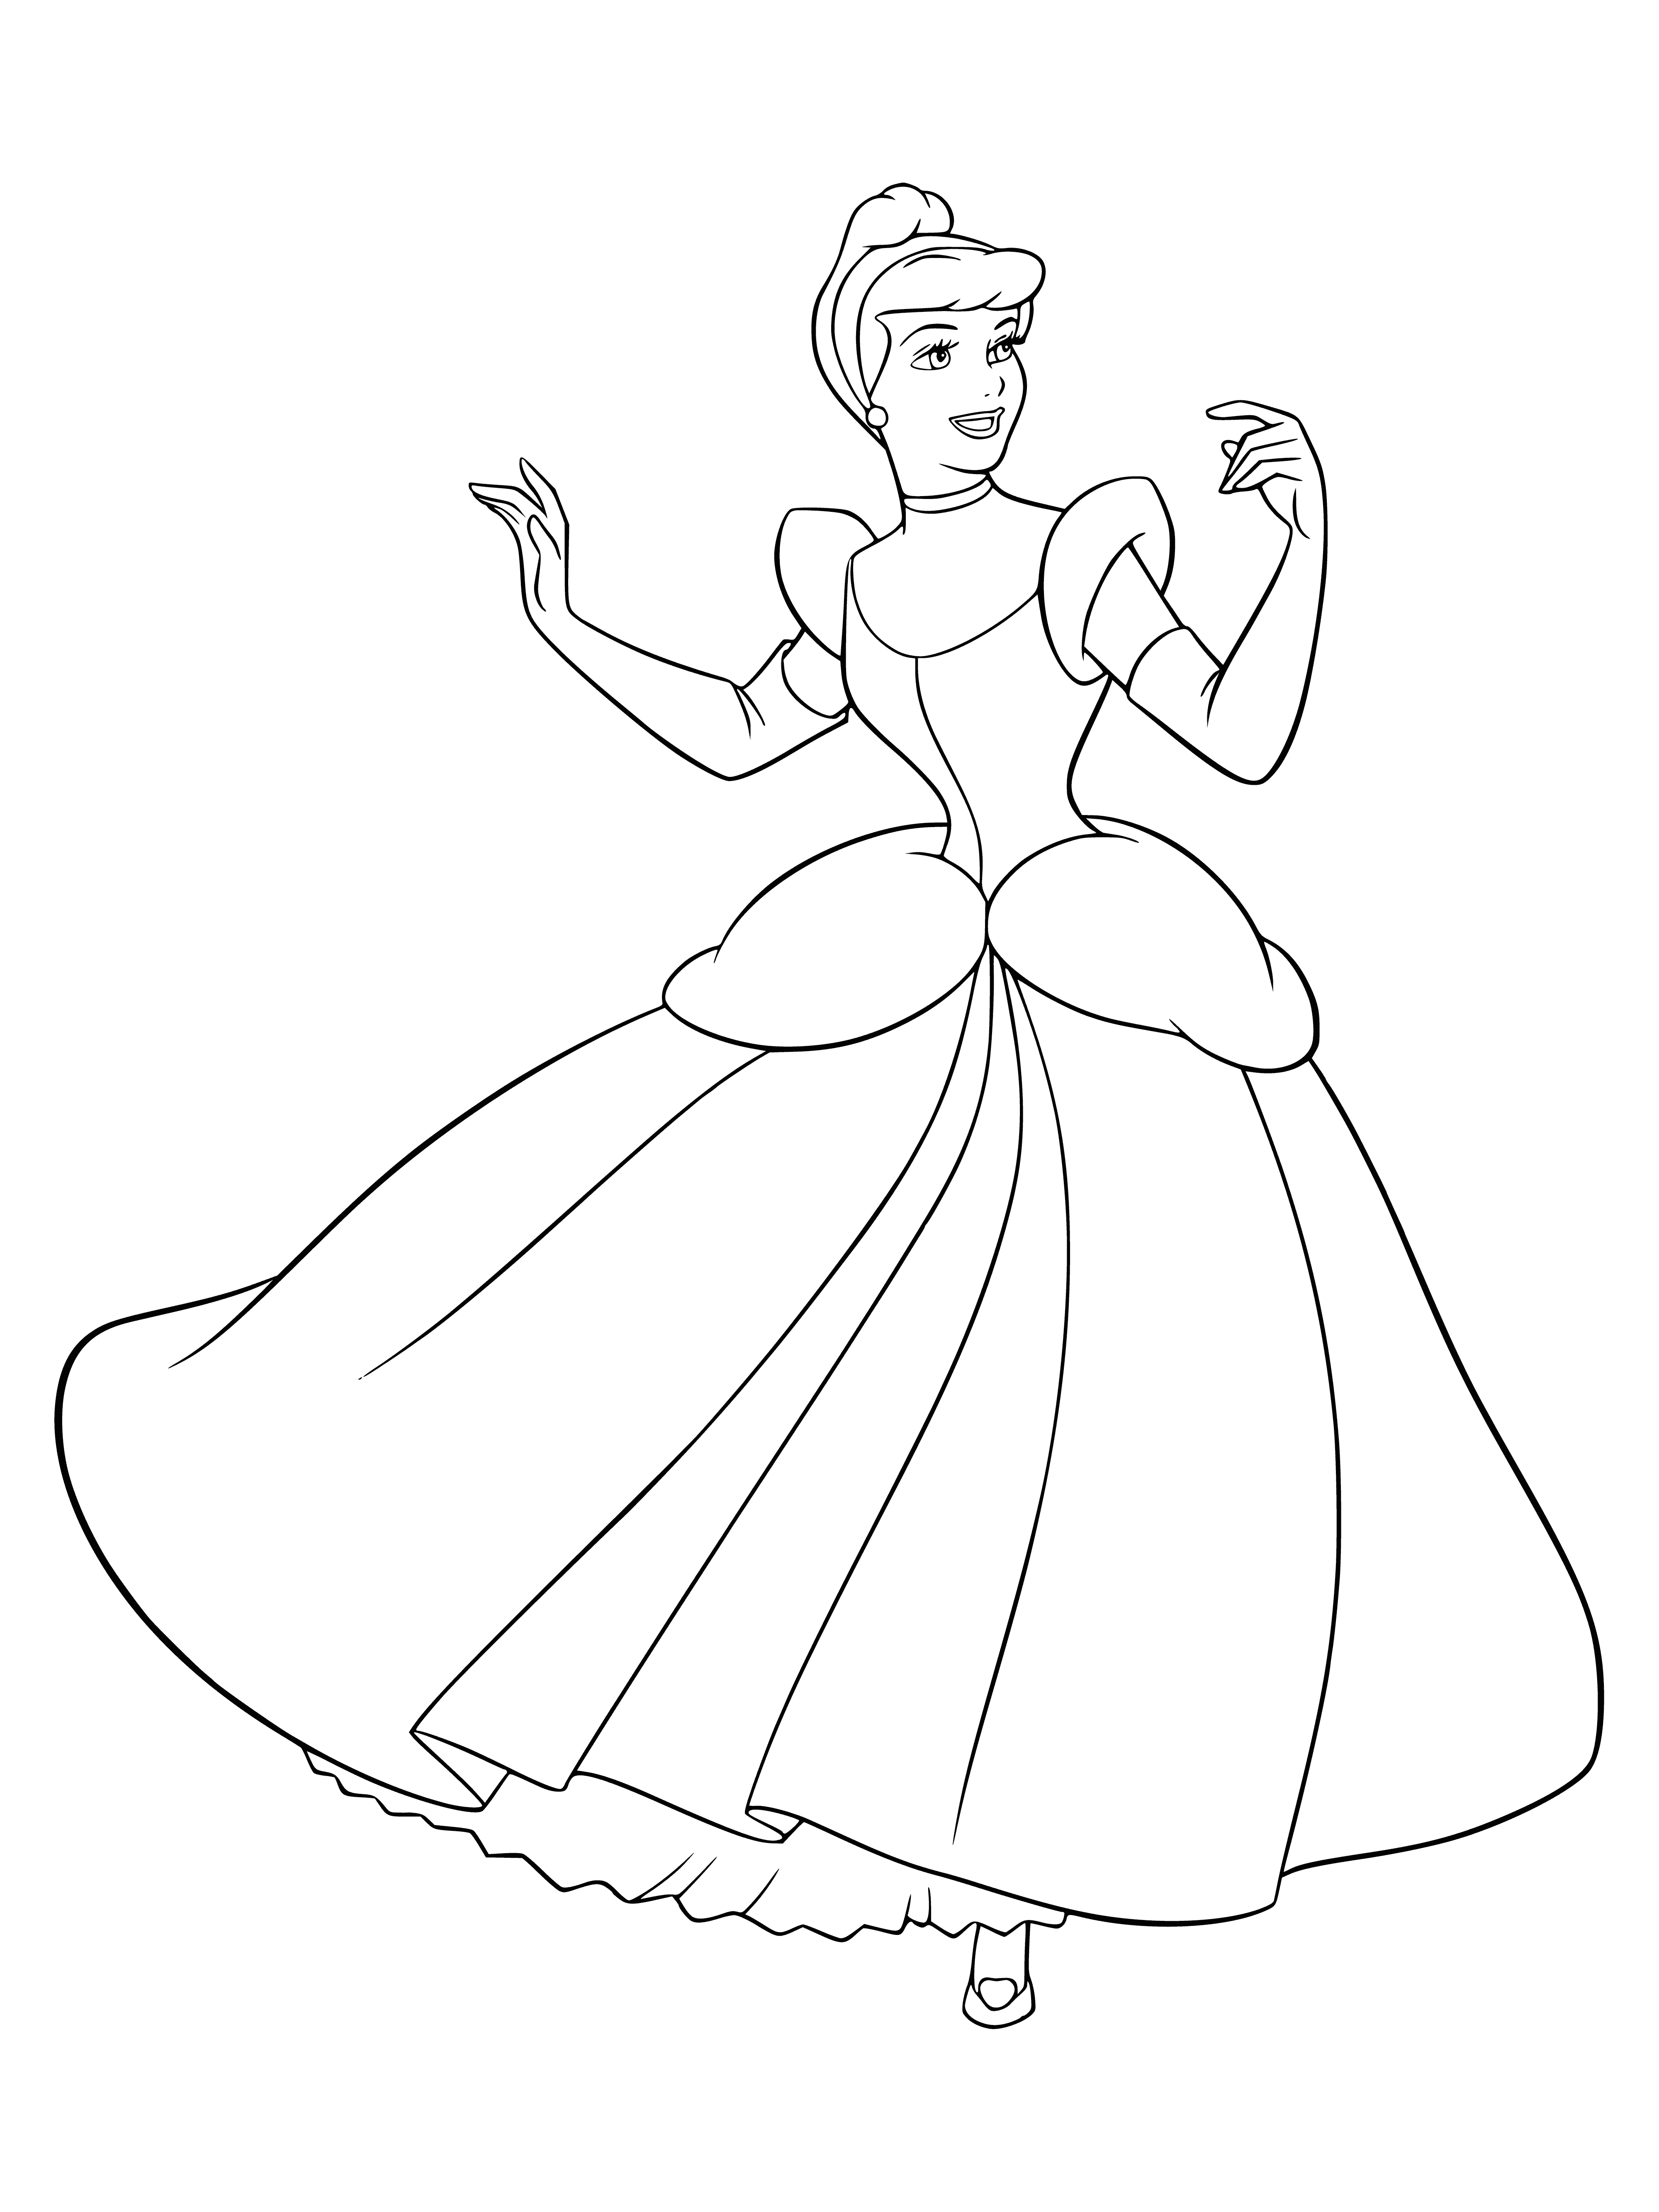 Real princess coloring page